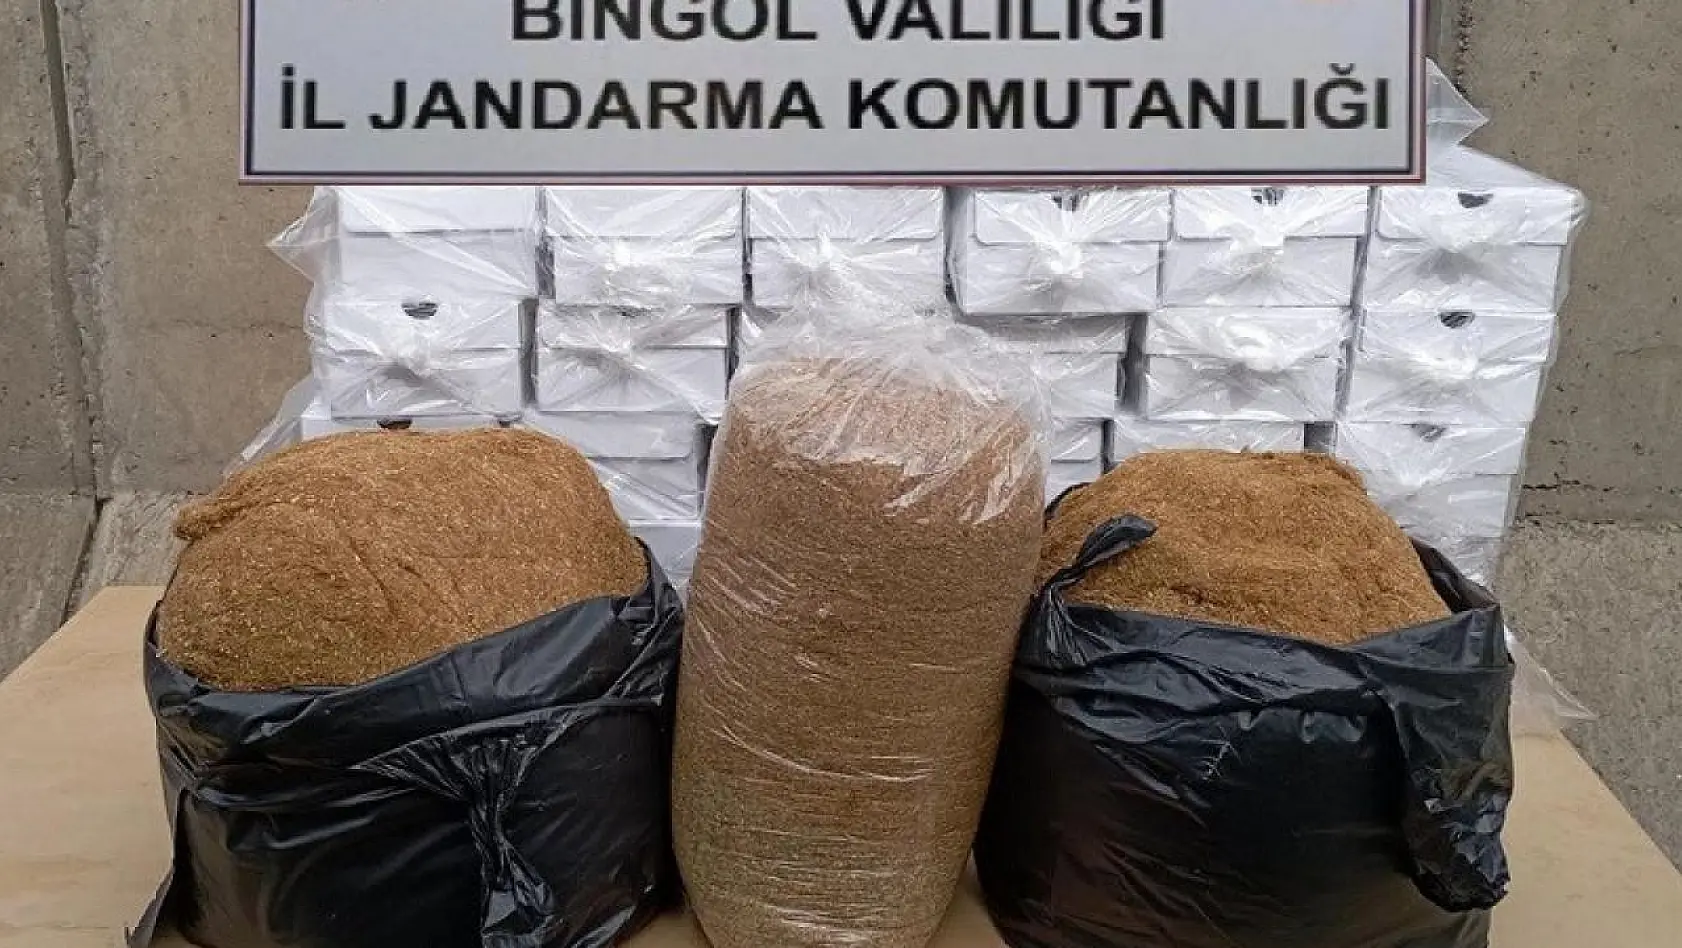 Bingöl'de 55 kilogram kaçak tütün ele geçirildi